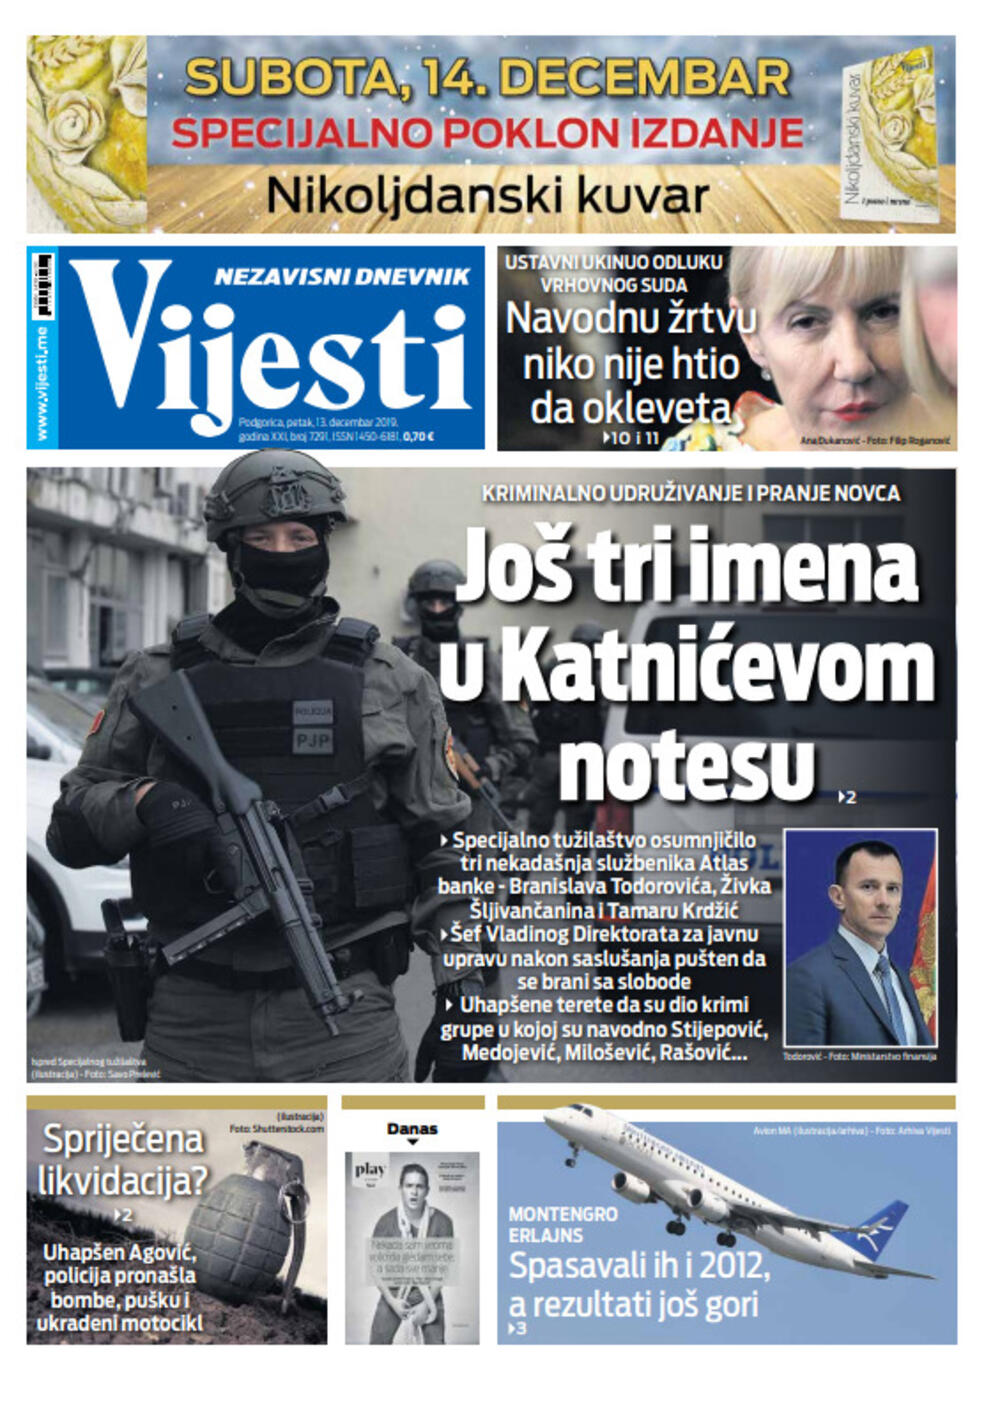 Naslovna strana "Vijesti" 13.12., Foto: Vijesti